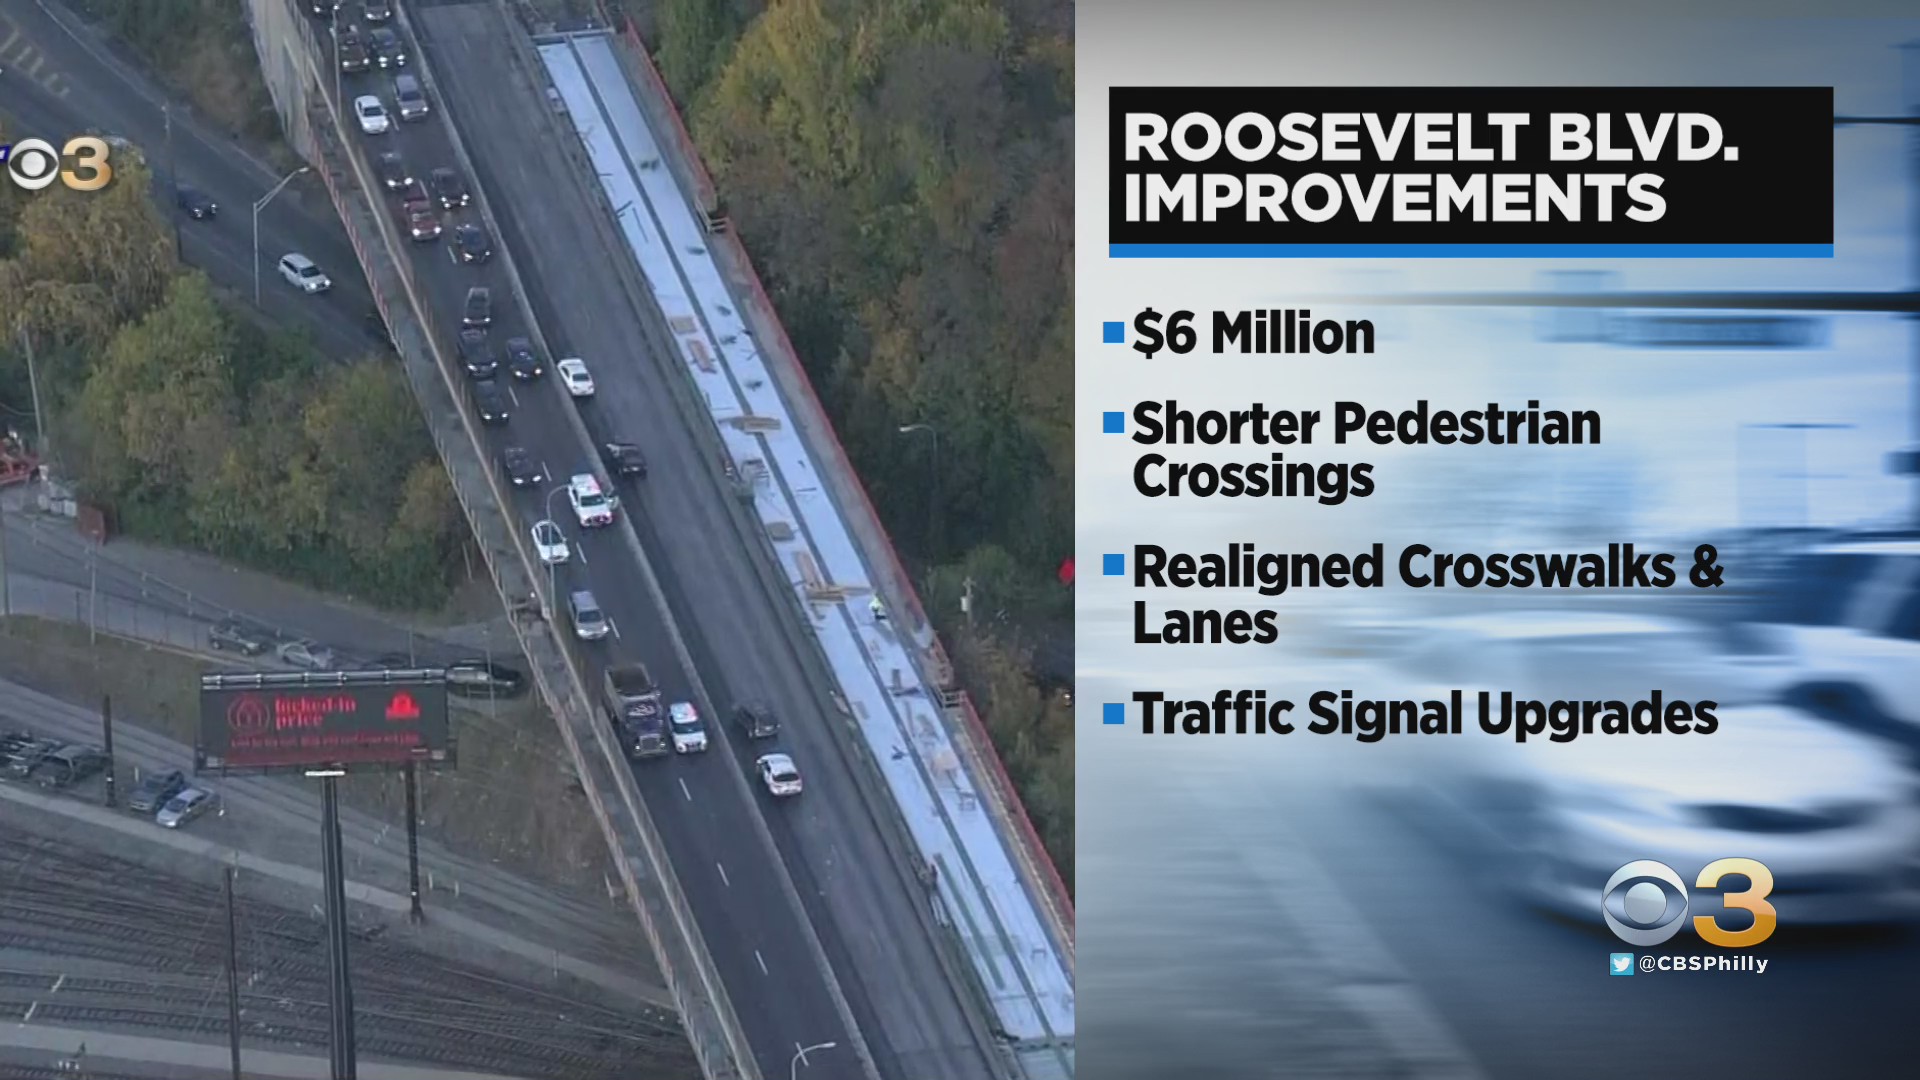 Pennsylvania Investing $6 Million Toward Making Roosevelt Boulevard Safer